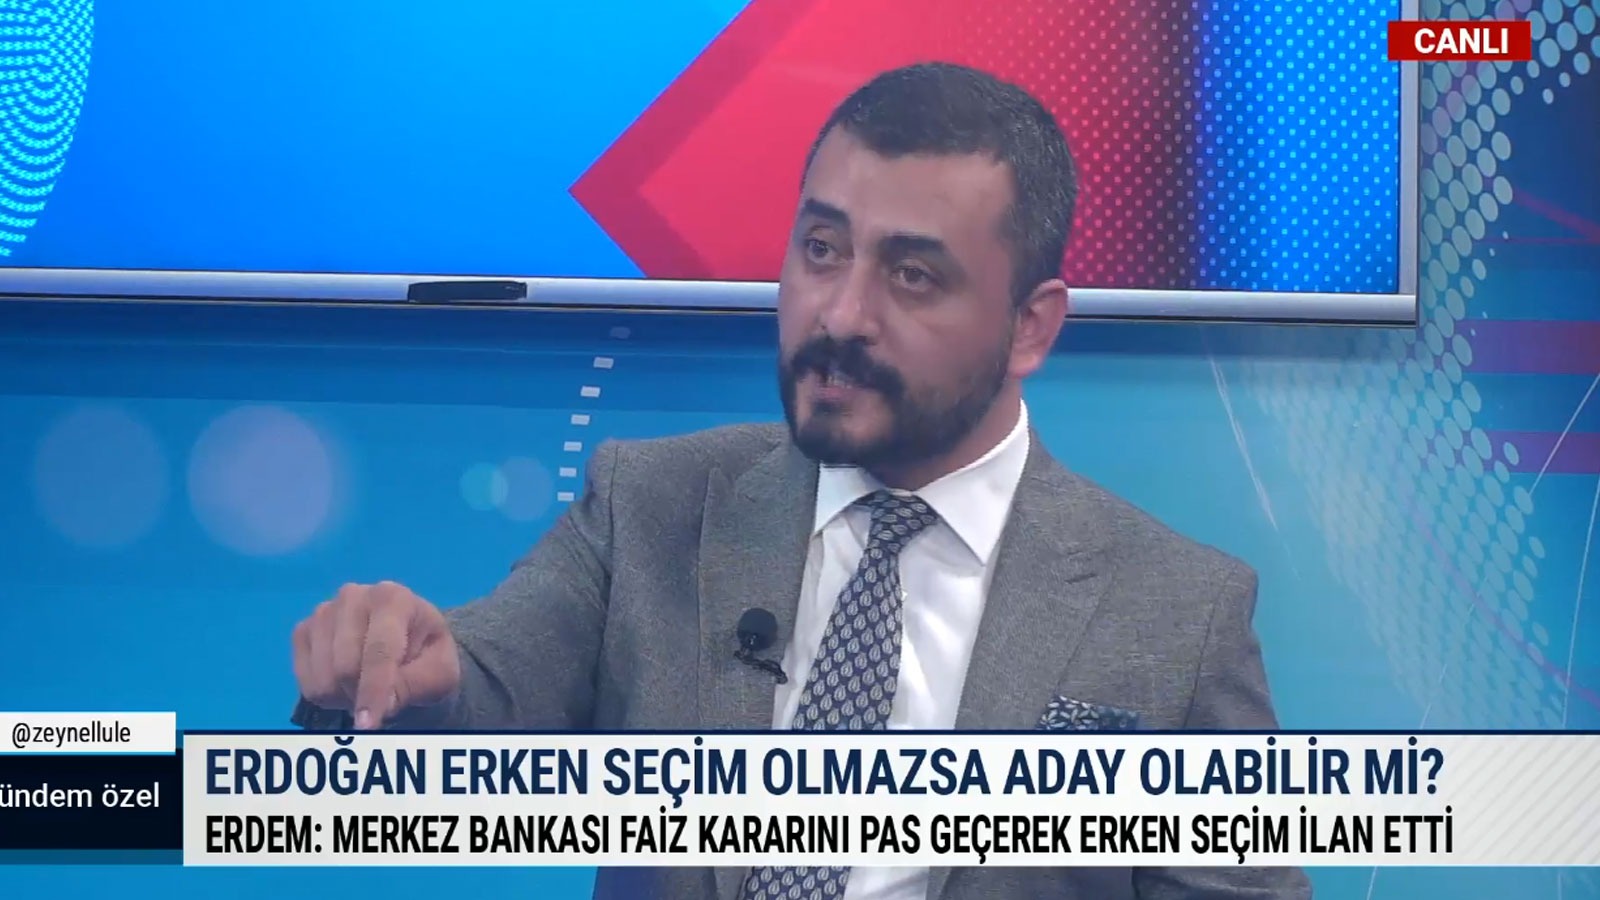 CHP'li Eren Erdem: Seçim tarihini Erdoğan değil, ekonomik koşullar belirler